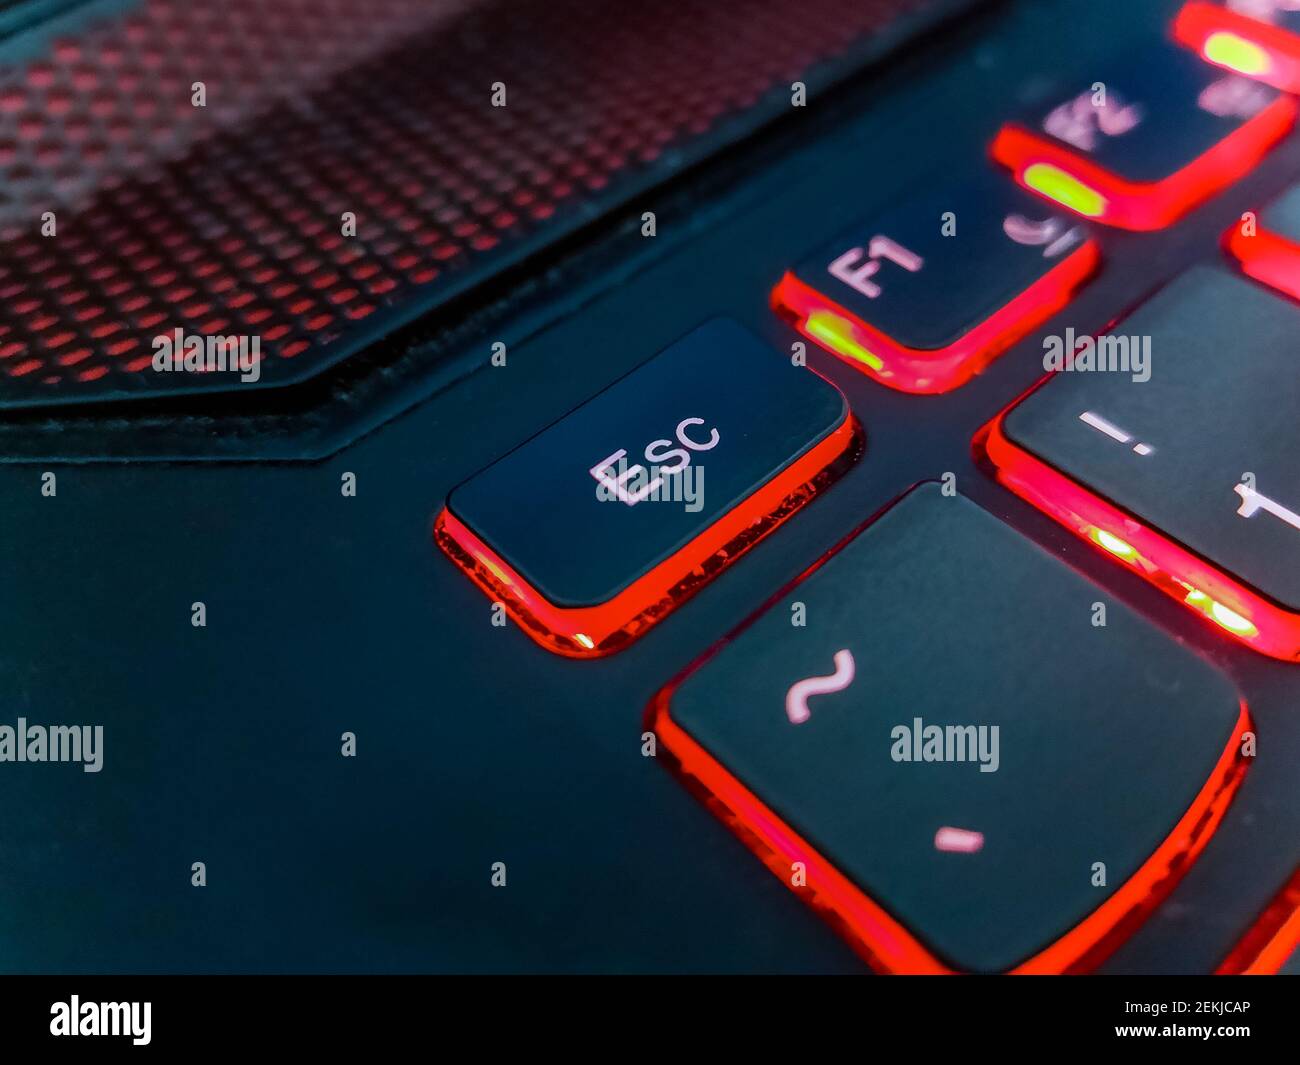 Die Tastatur des Laptops wird durch rote Lichter hervorgehoben Stockfoto